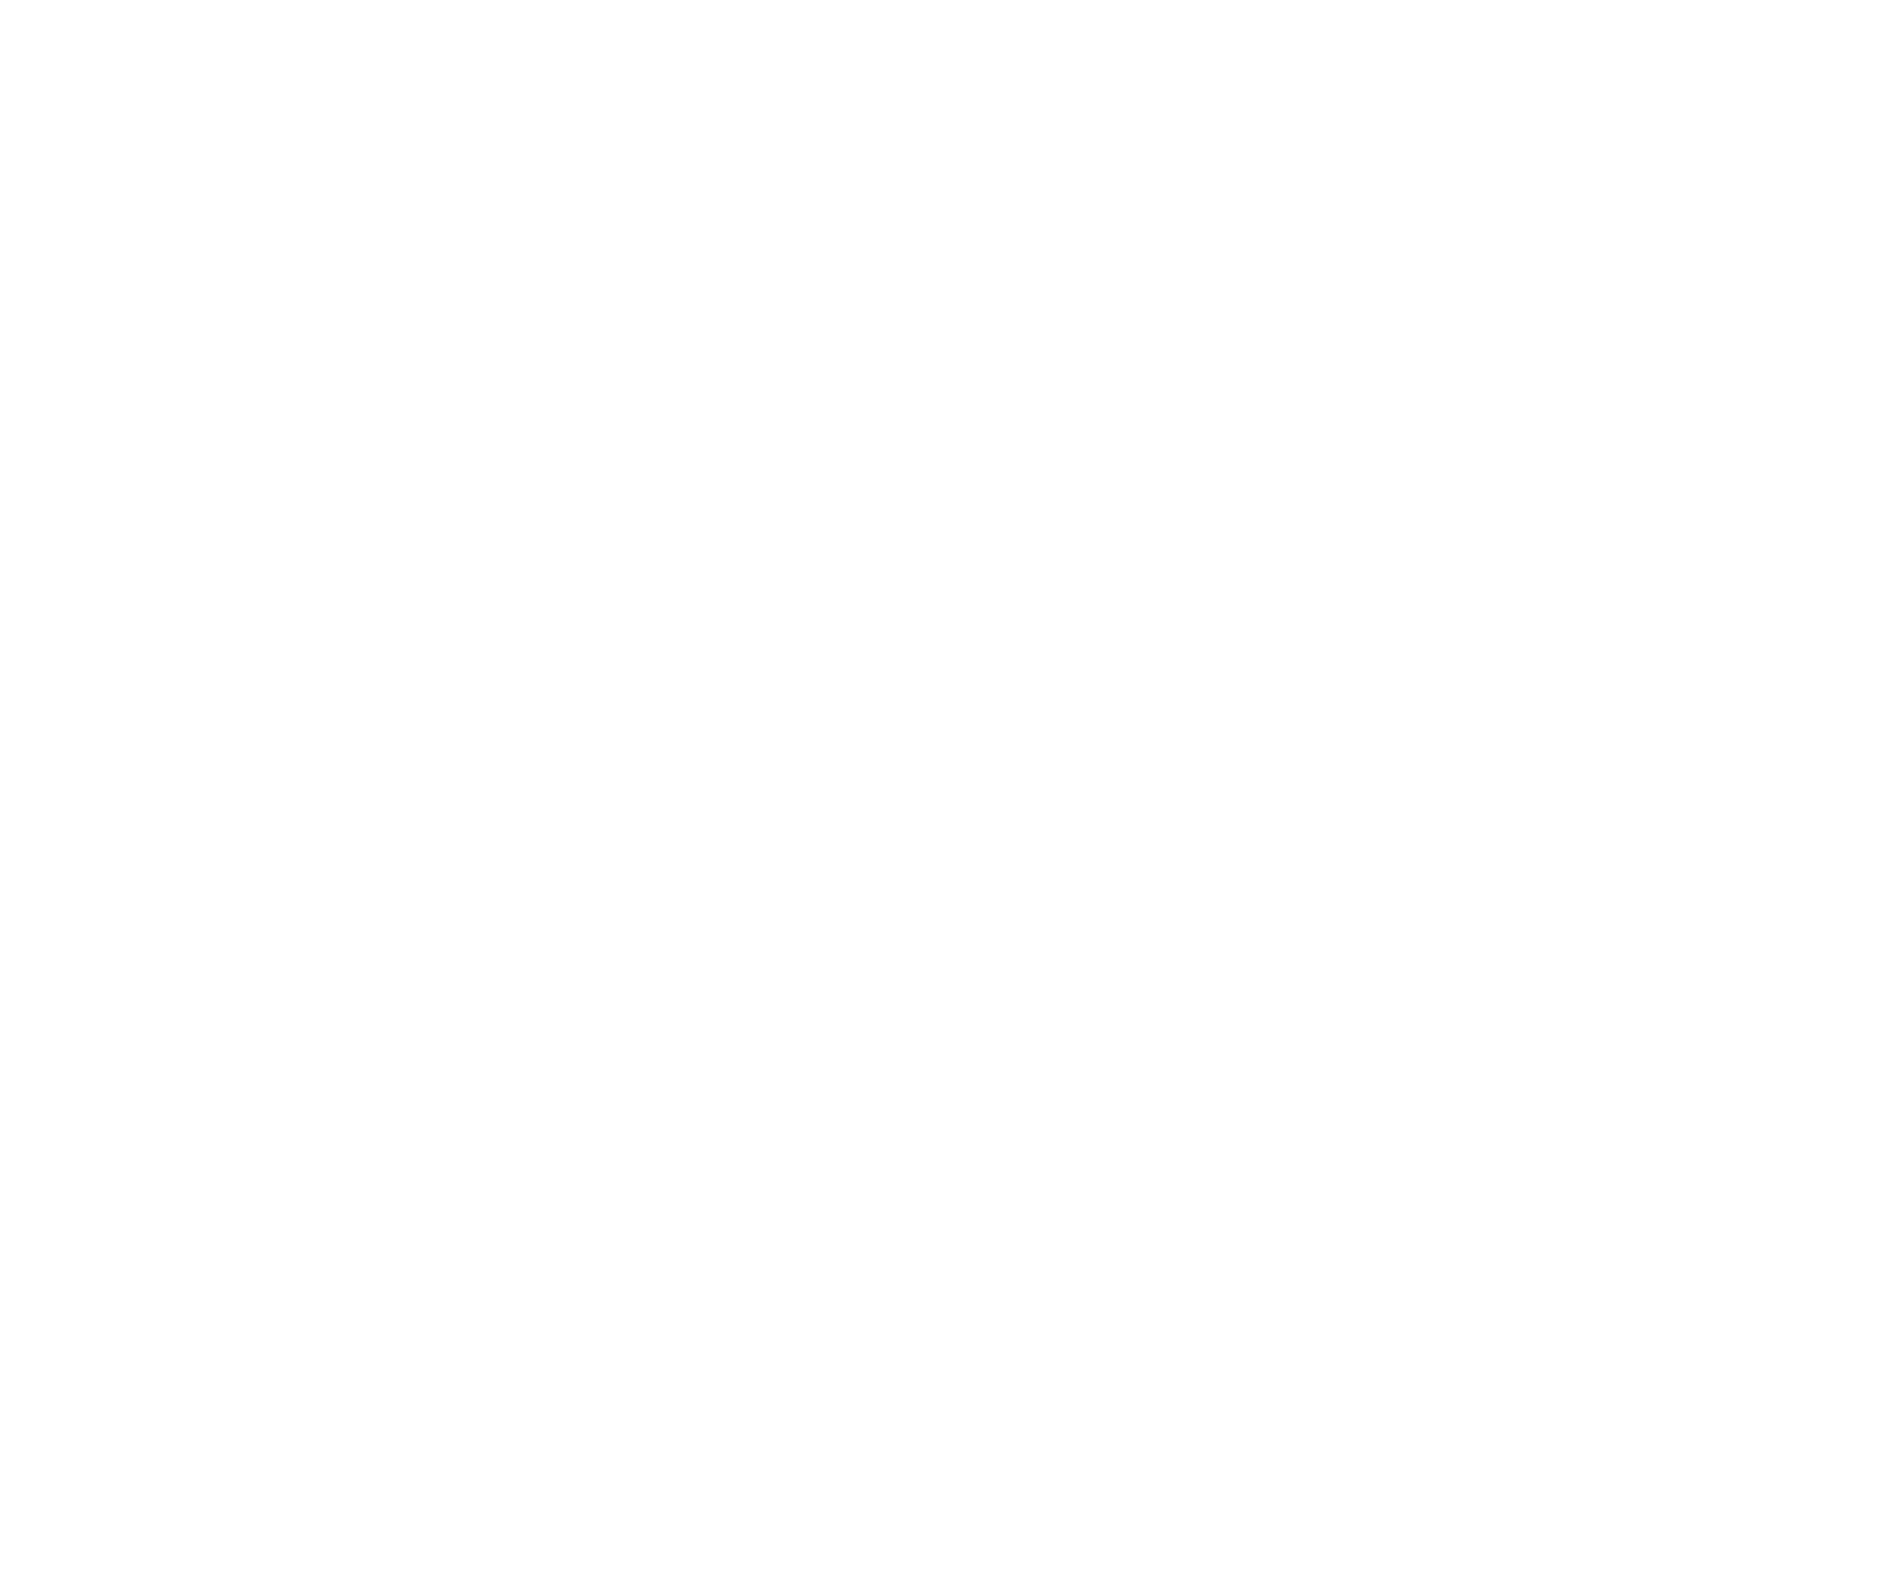 Neil Betrue